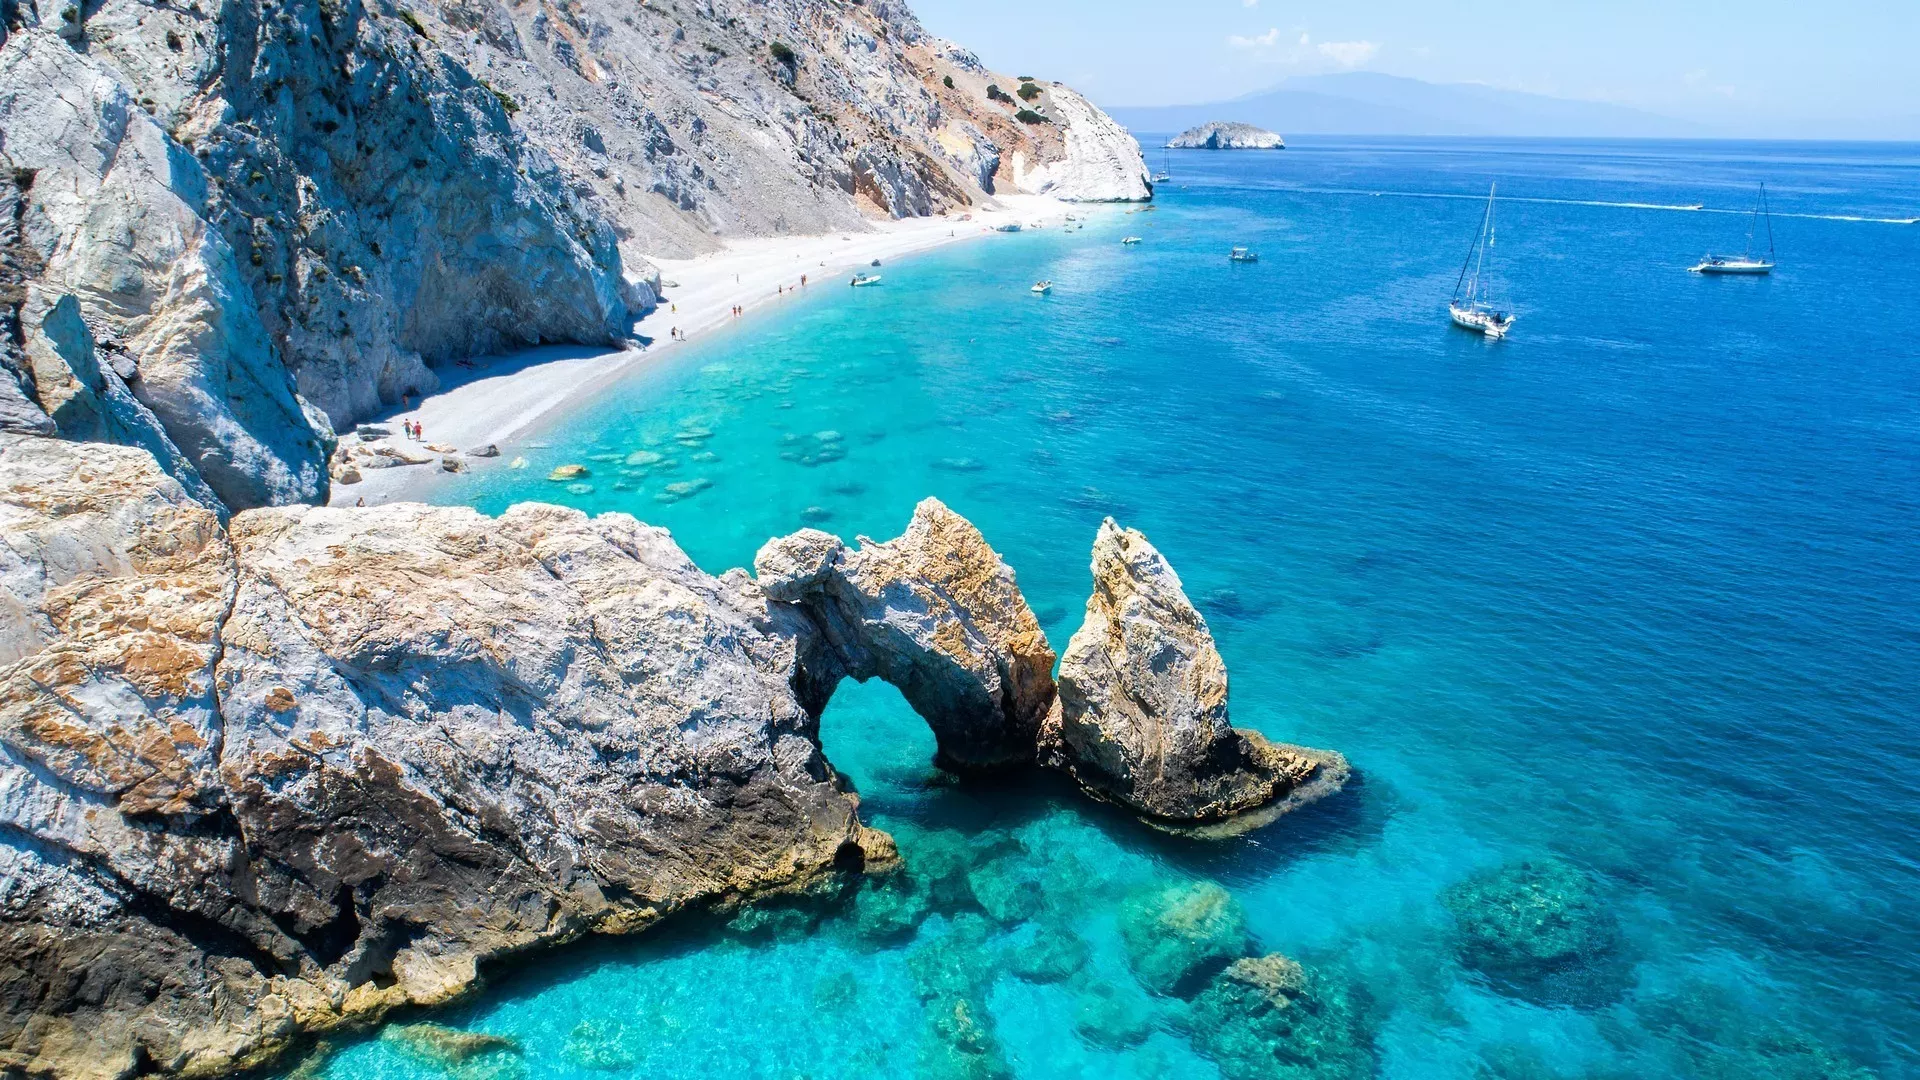 Αυτές είναι οι ωραιότερες παραλίες της Ελλάδας σύμφωνα με τη γαλλική Vogue